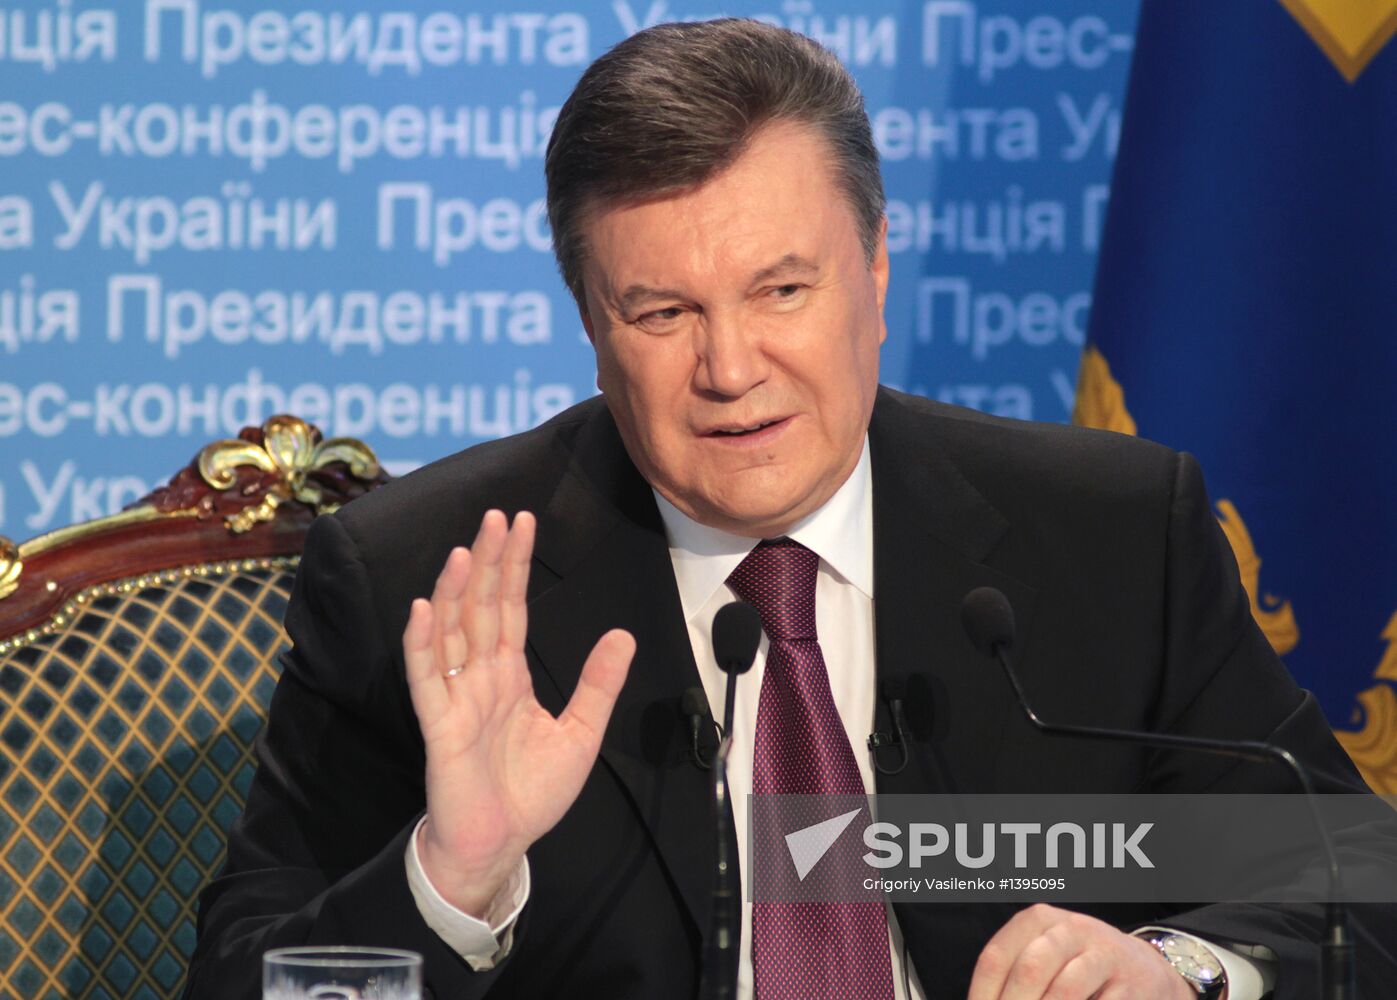 Ukrainian President V. Yanukovych at concluding news conference